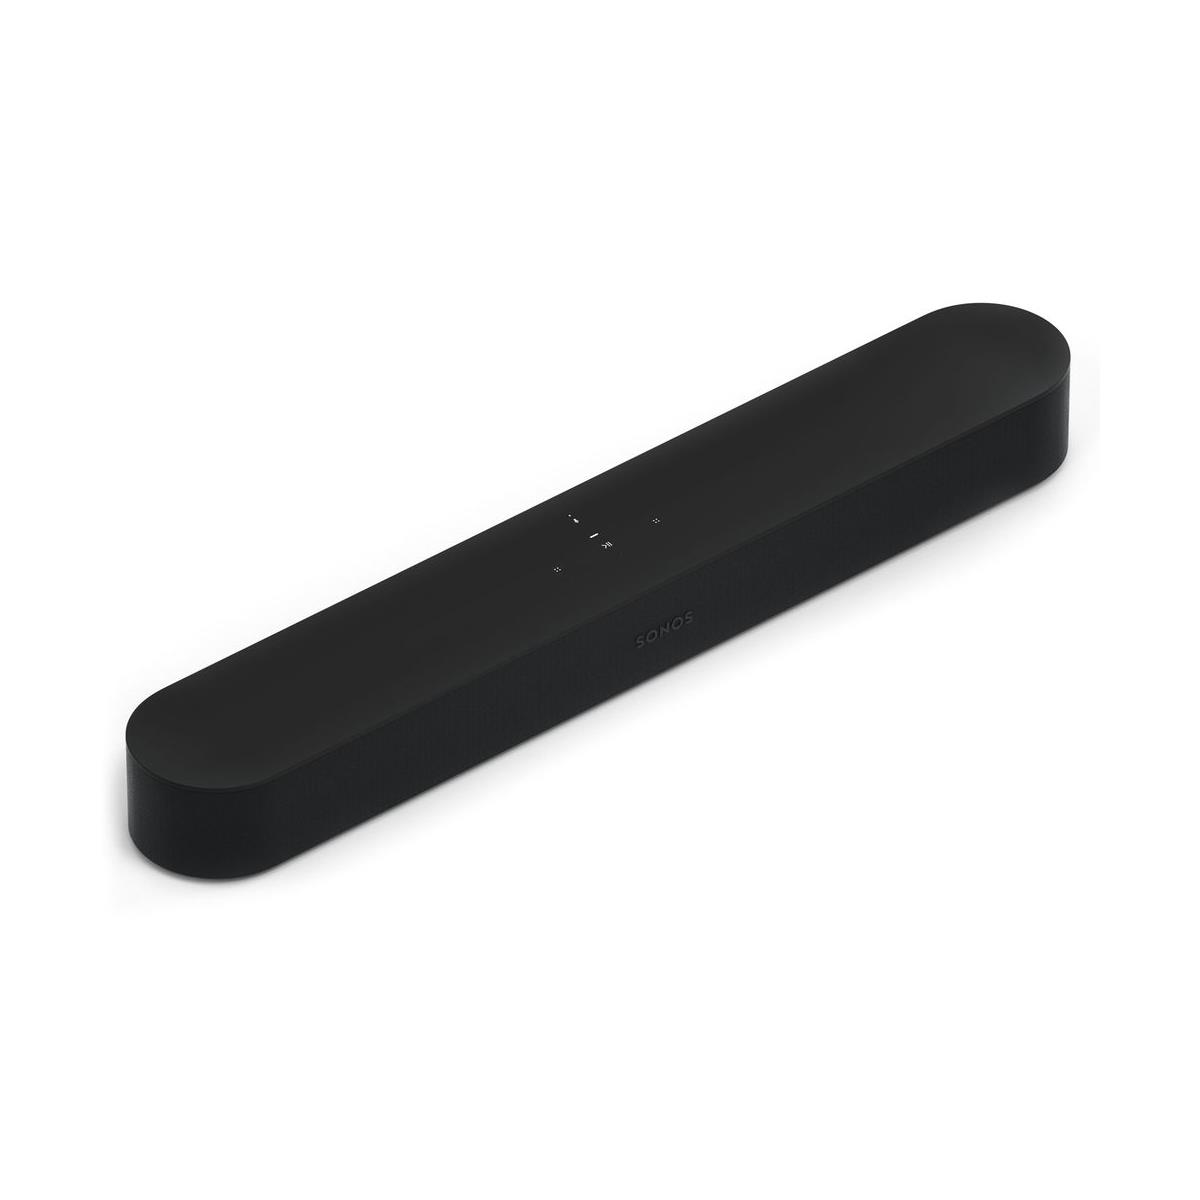 The Sonos Beam soundbar speaker in black